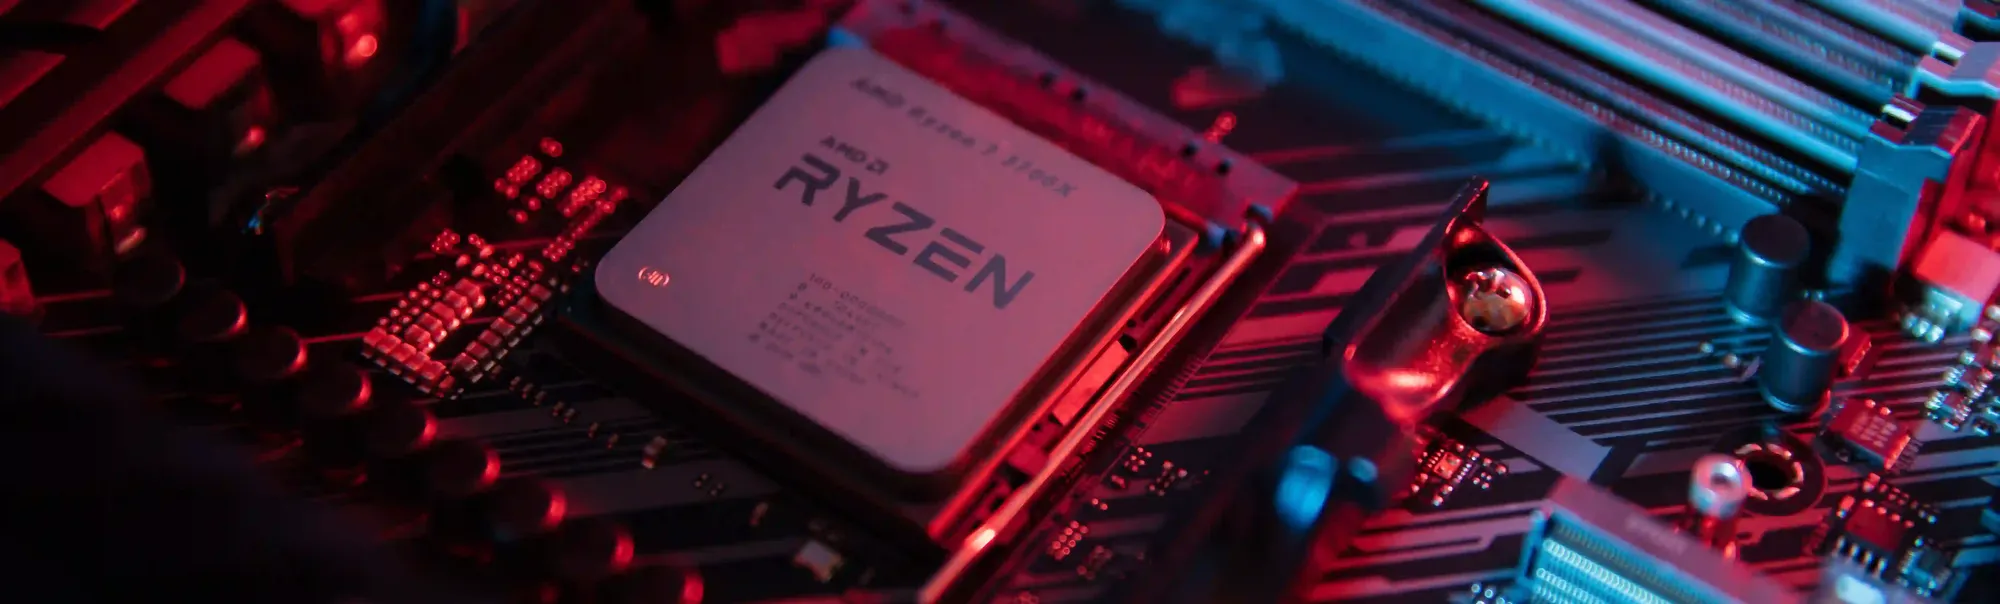 Capa do post: Ryzen 7 5800x: encontre aqui nossa análise sobre o processador